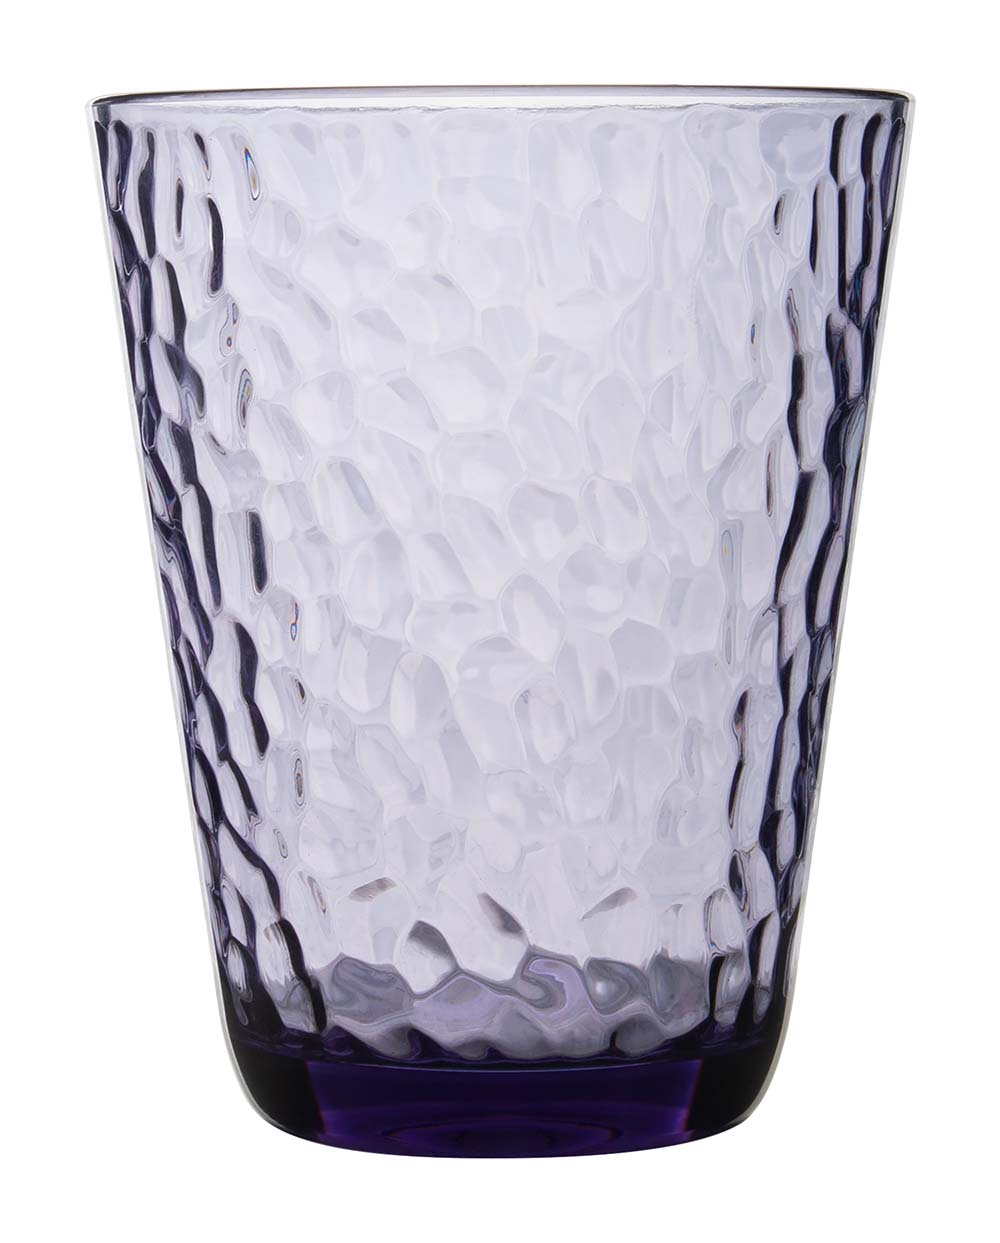 6967947 Een stijlvol blauw waterglas uit de Stone line collectie. Vrijwel onbreekbaar door hoogwaardig SAN materiaal. Zeer gemakkelijk te reinigen en langdurig te gebruiken, wat het glas erg duurzaam maakt. Daarnaast is het waterglas erg lichtgewicht en krasbestendig. Inhoud: 240 ml.